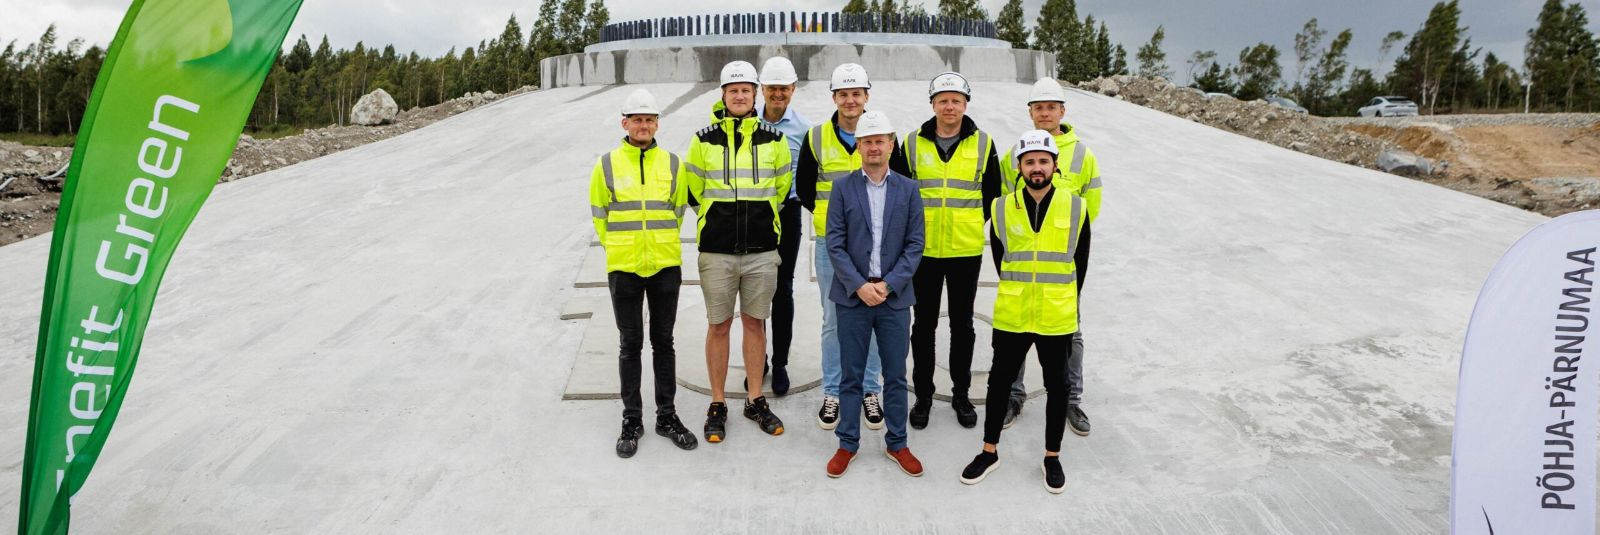 Connecto Eesti AS on uhke osalemise üle Pärnumaa Sopi-Tootsi taastuvenergeetika ala ehitamisel koostöös Nordecon Betoon OÜ ja Verston OÜ-ga. Meie rolliks on tuu